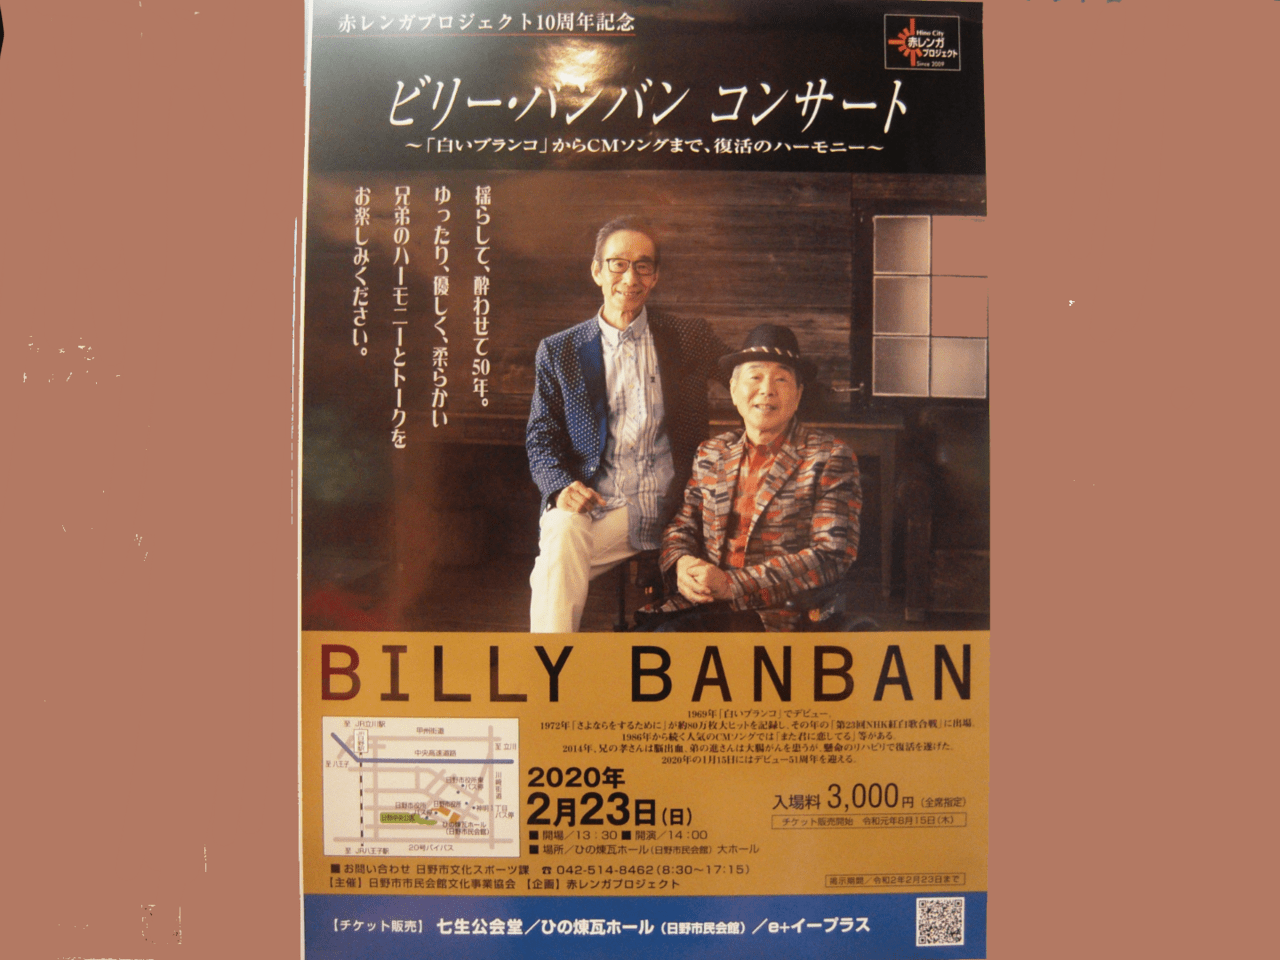 ビリー・バンバンが2019年2月23日にひの煉瓦ホールでコンサート